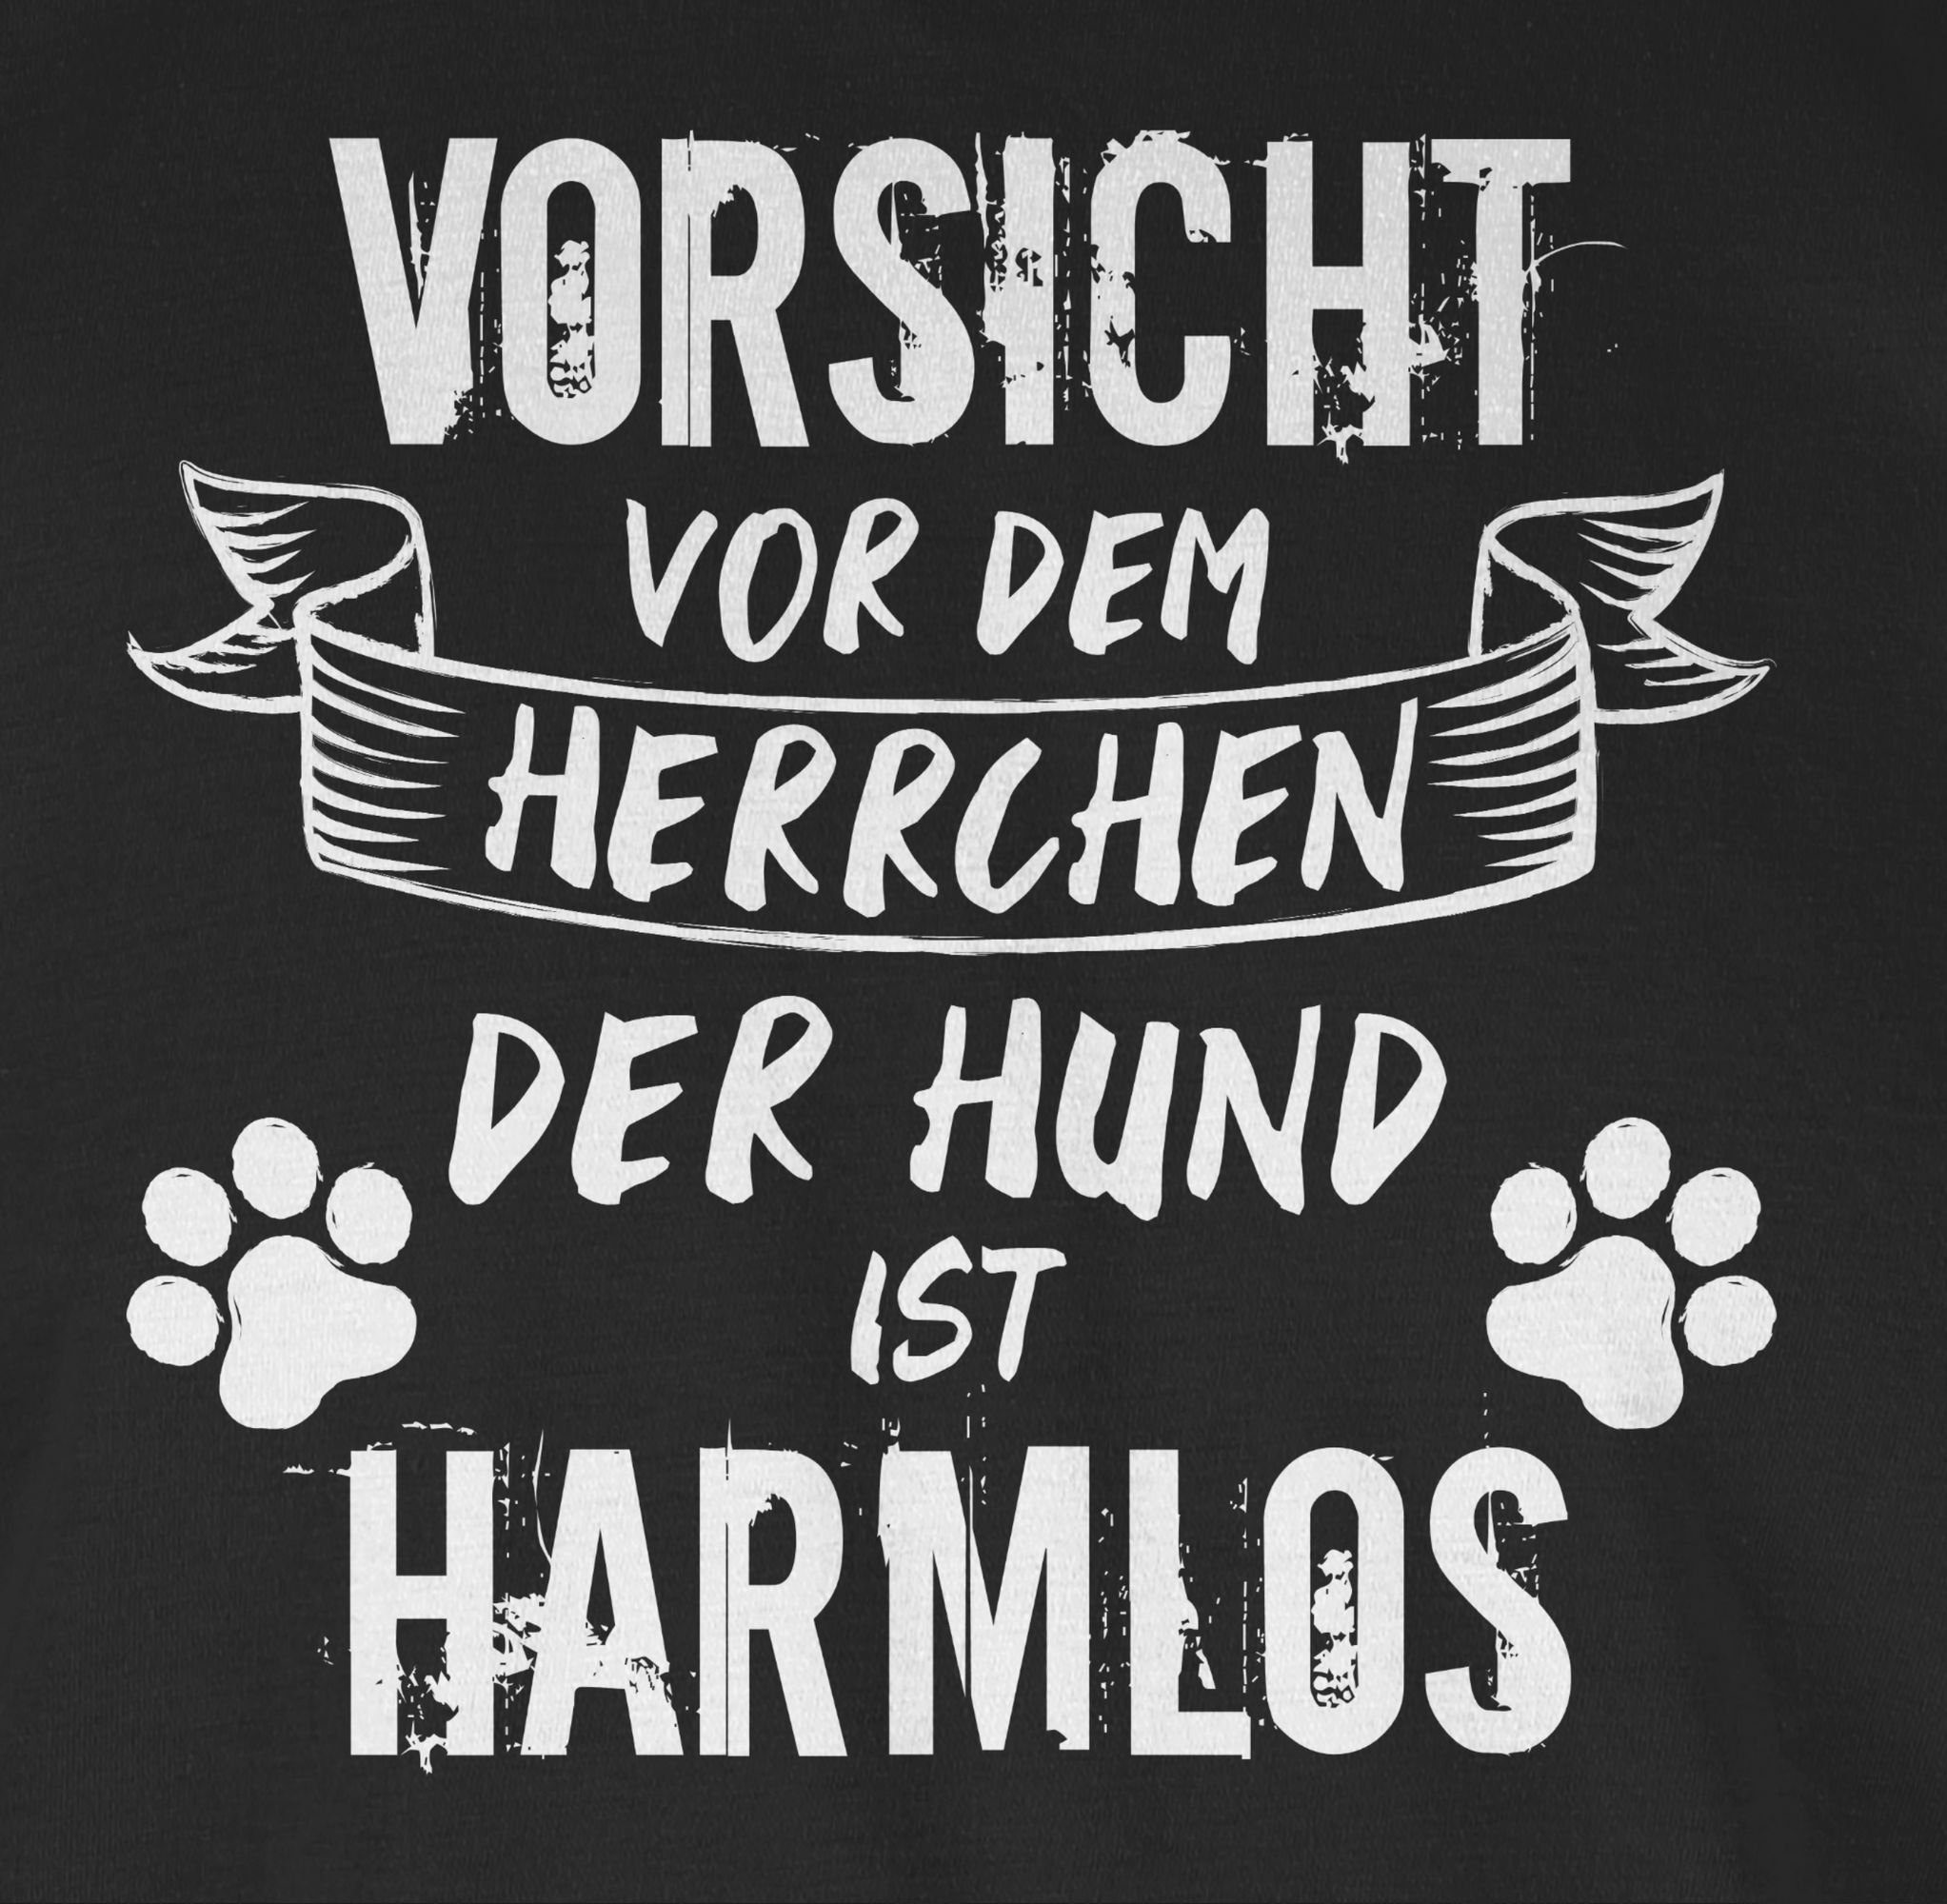 Shirtracer T-Shirt 01 Geschenk - ist dem Weiß Herrchen harmlos Vorsicht Grunge/Vintage Schwarz Hund vor für Hundebesitzer der 